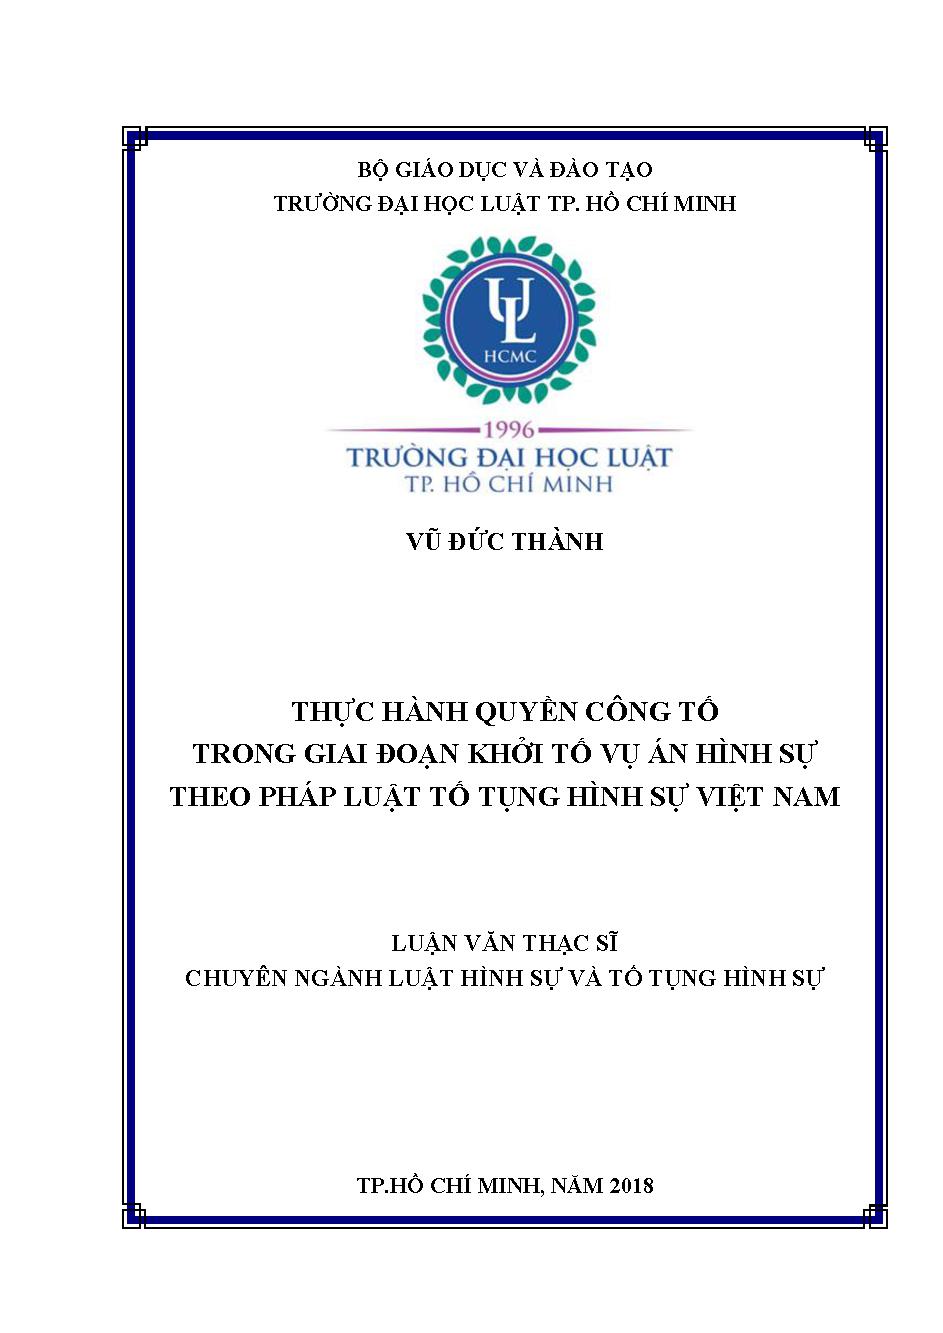 Thực hành quyền công tố trong giai đoạn khởi tố vụ án hình sự theo pháp luật tố tụng hình sự Việt Nam